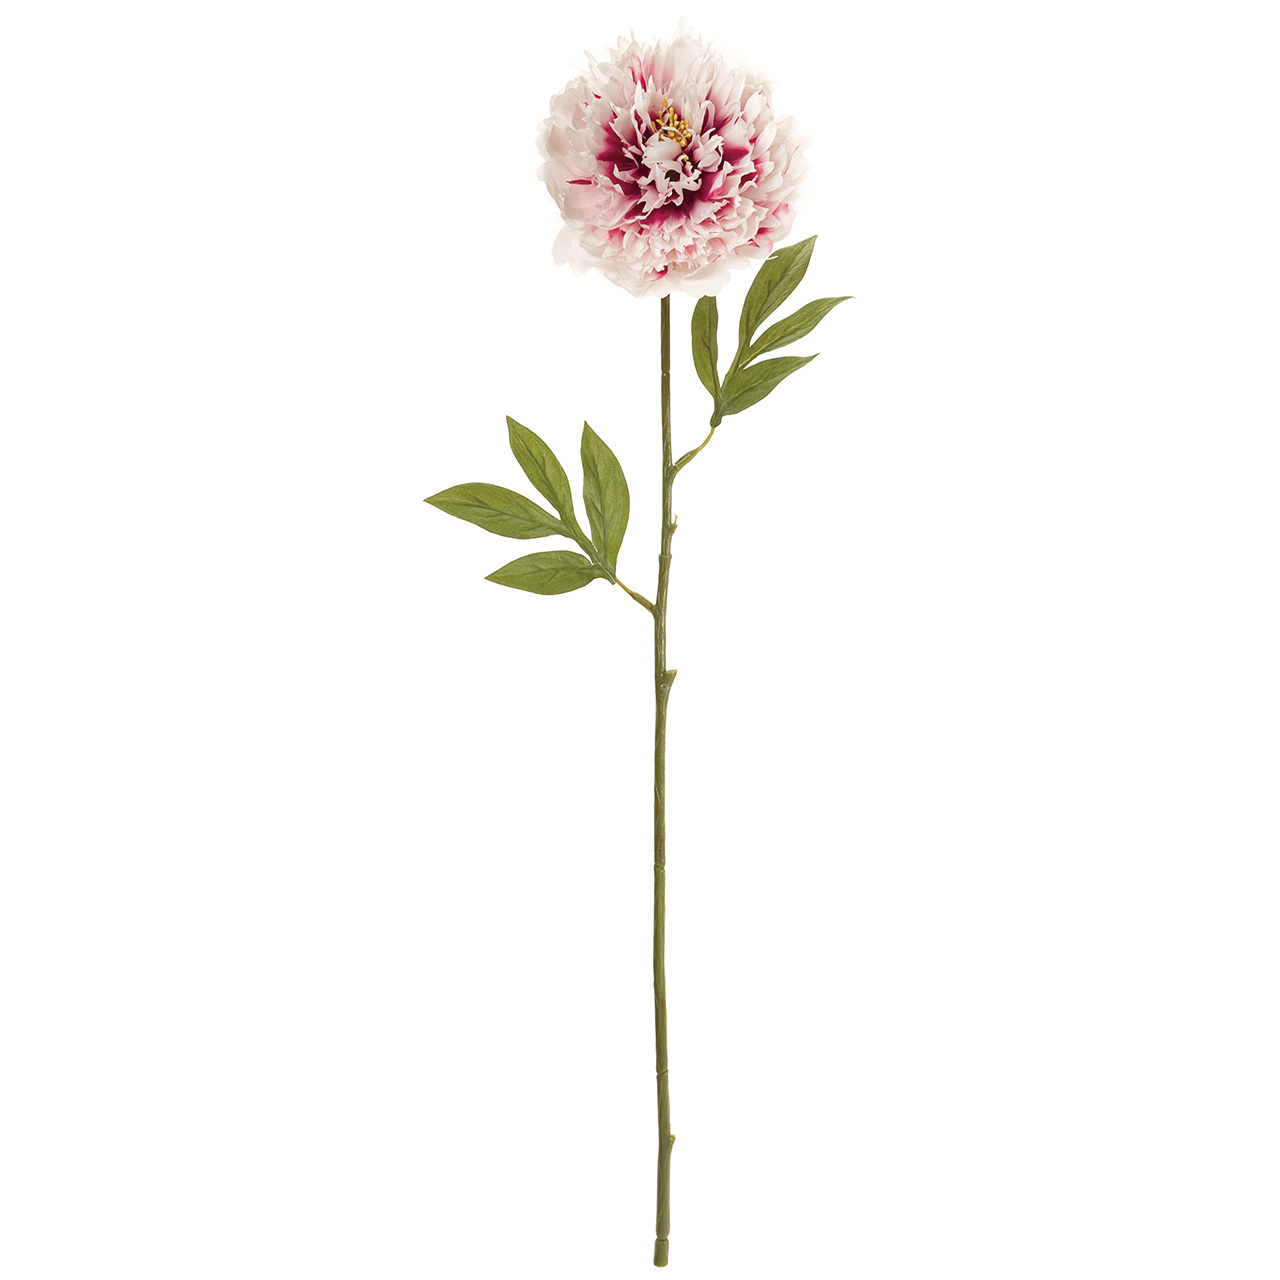 マイフラ 通販 Magiq ロイヤルピオニー ホワイトビュ ティ アーティフィシャルフラワー 造花 Fm 116 ピオニー 花径 約13 全長 約72cm ホワイトビューティ Magiq アーティフィシャルフラワー 造花 全国にmagiq 花器 花資材などをお届けします